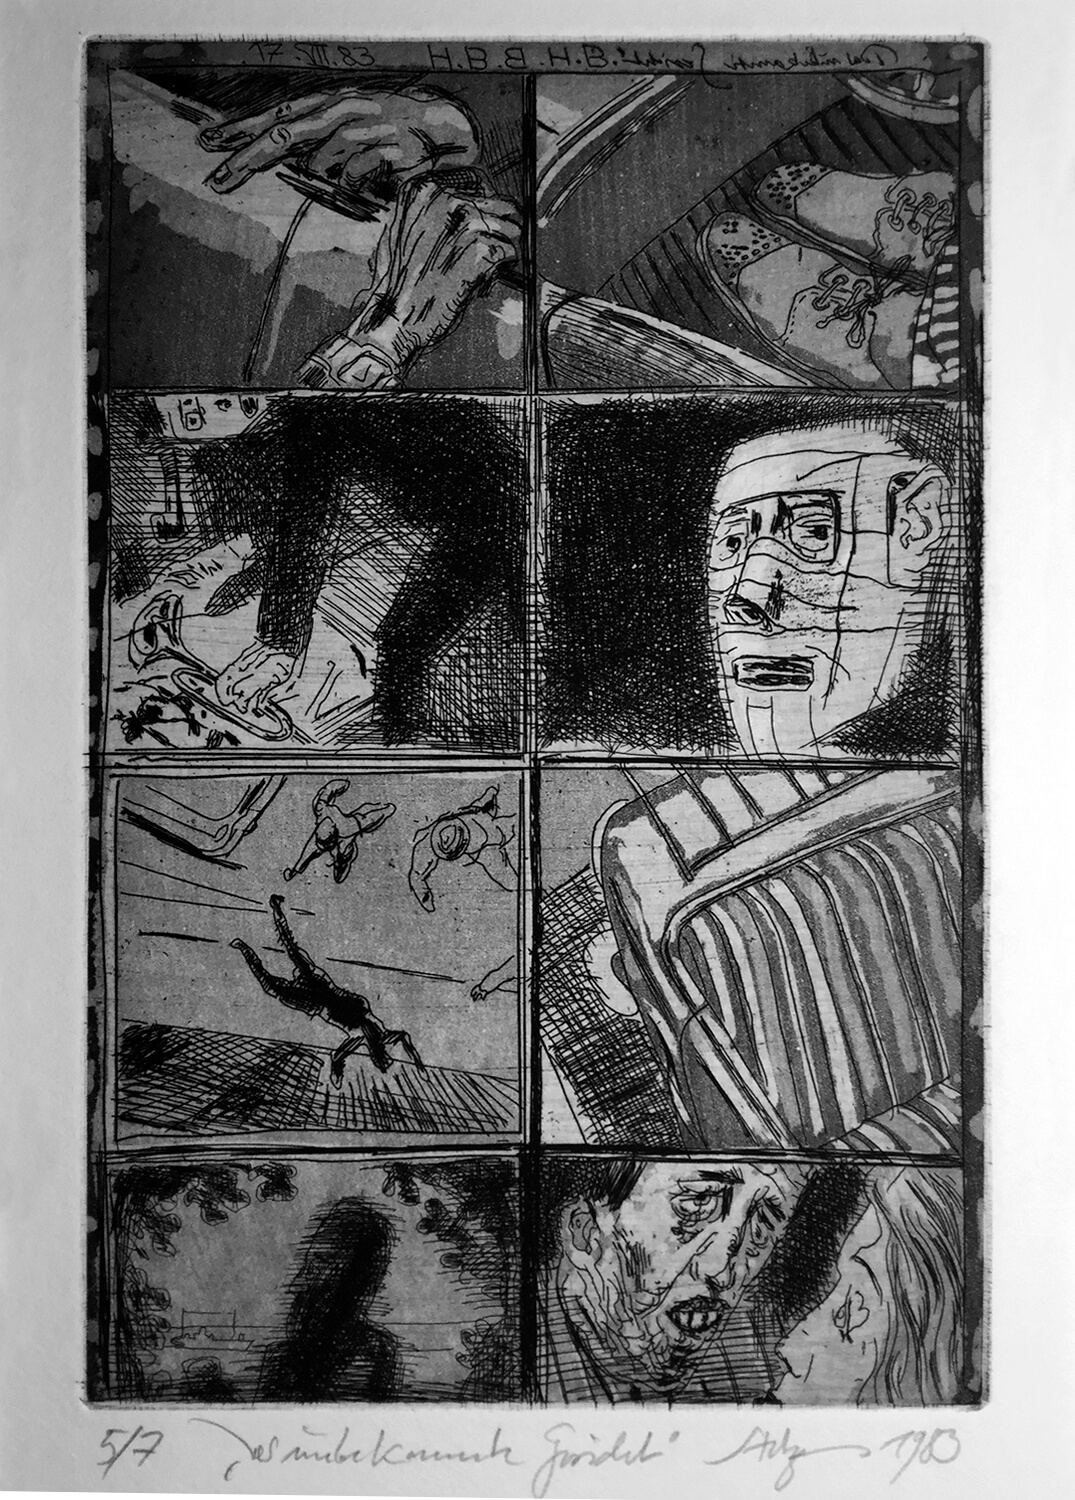 Volker Stelzmann, Das unbekannte Gesicht, 1980, Radierung, Strichätzung, Aquatinta, Auflage: 7, Bild: 19,5 x 7 cm, Blatt: 53,5 x 38 cm